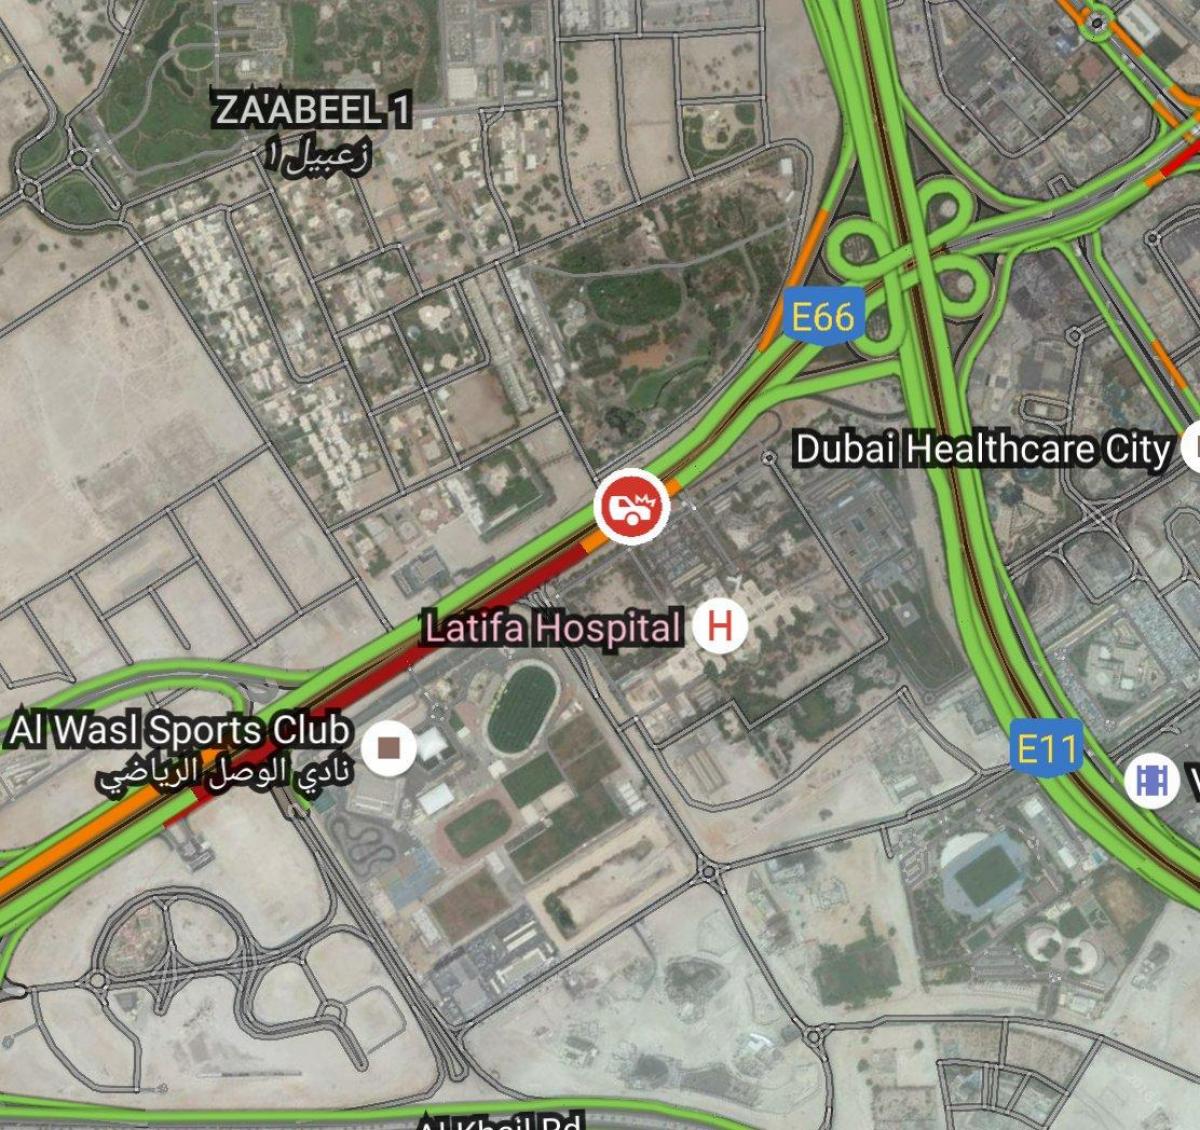 rumah sakit latifa Dubai peta lokasi